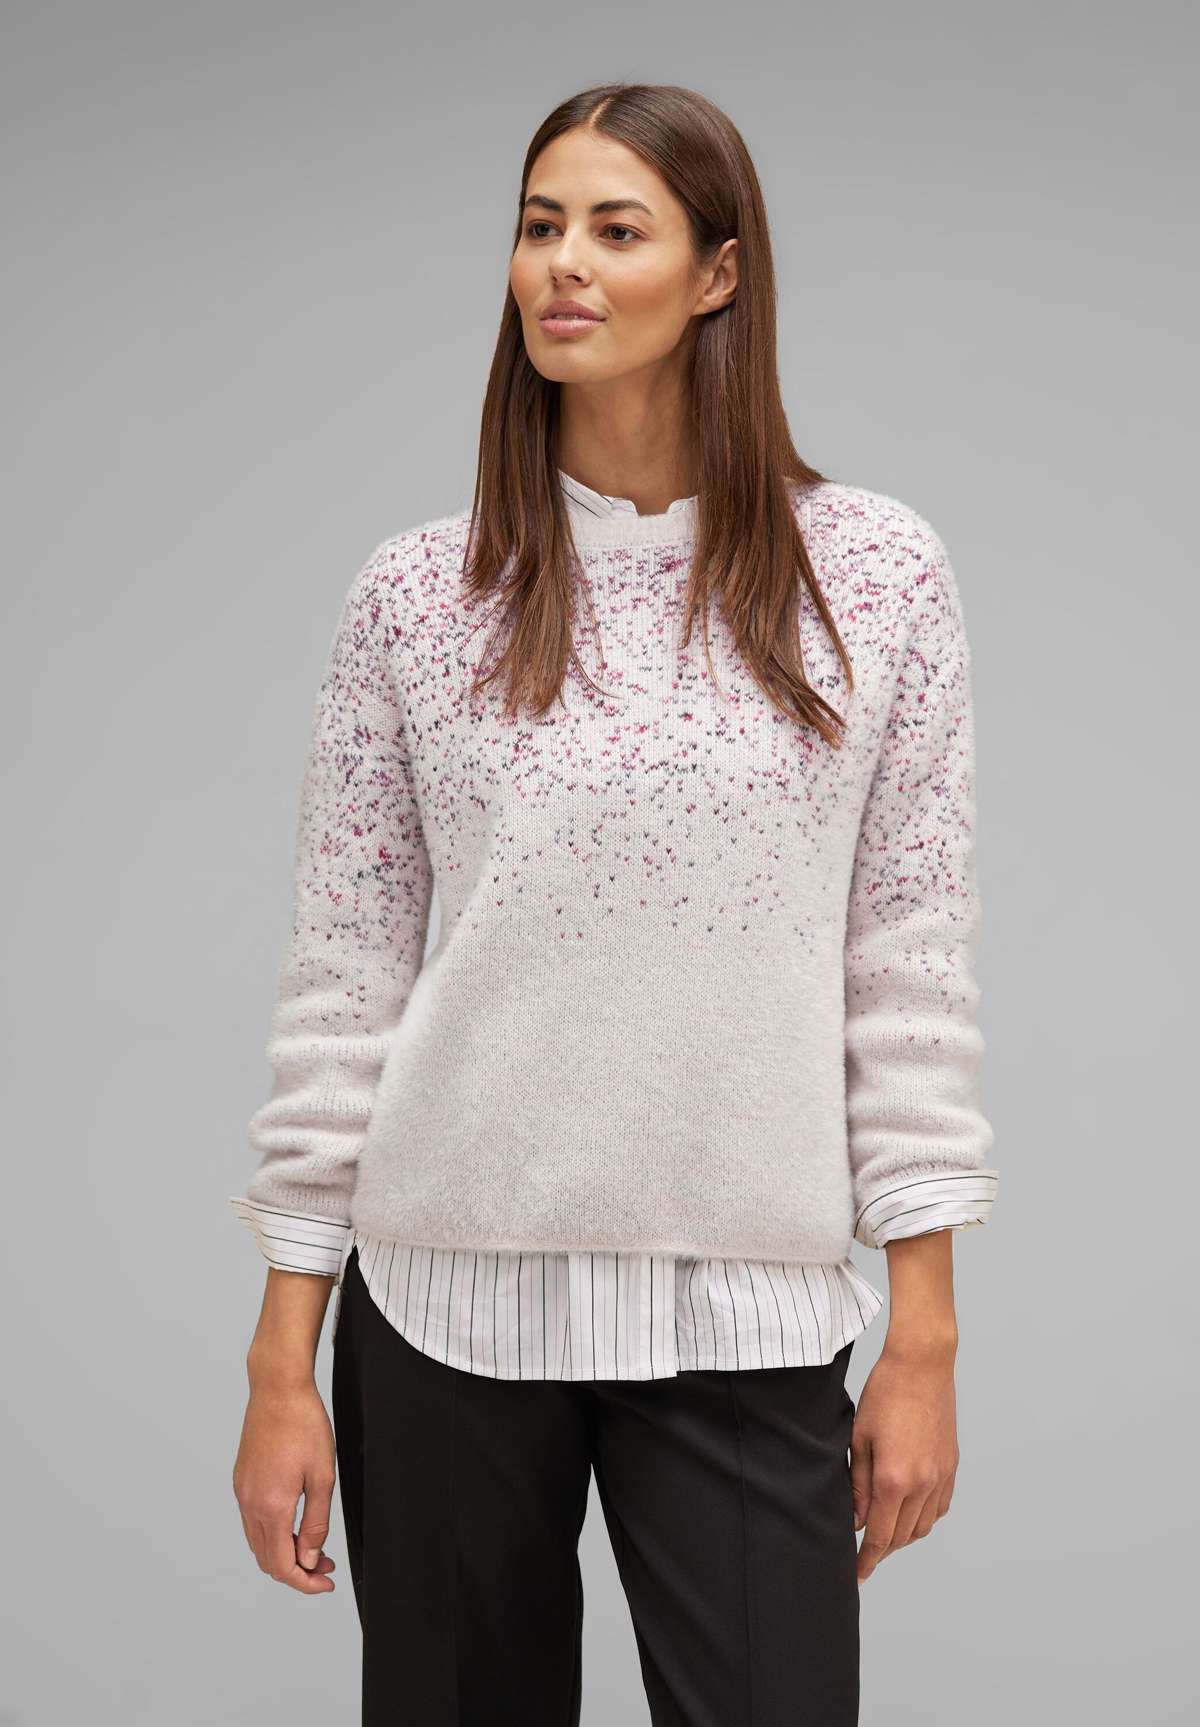 Вязаный свитер, цветовой градиент с точечным узором